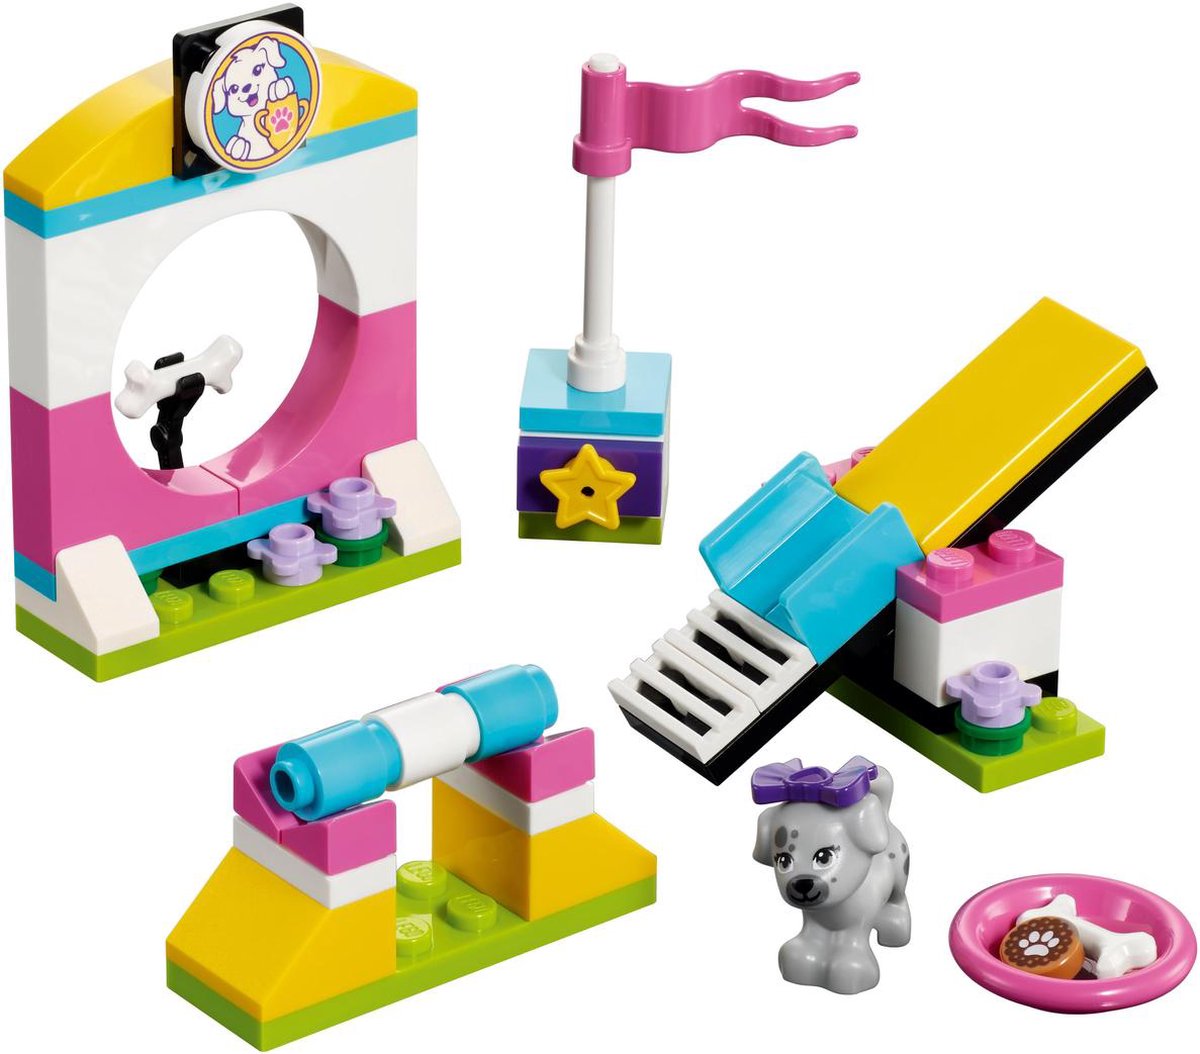 L'aire de jeux des enfants Lego